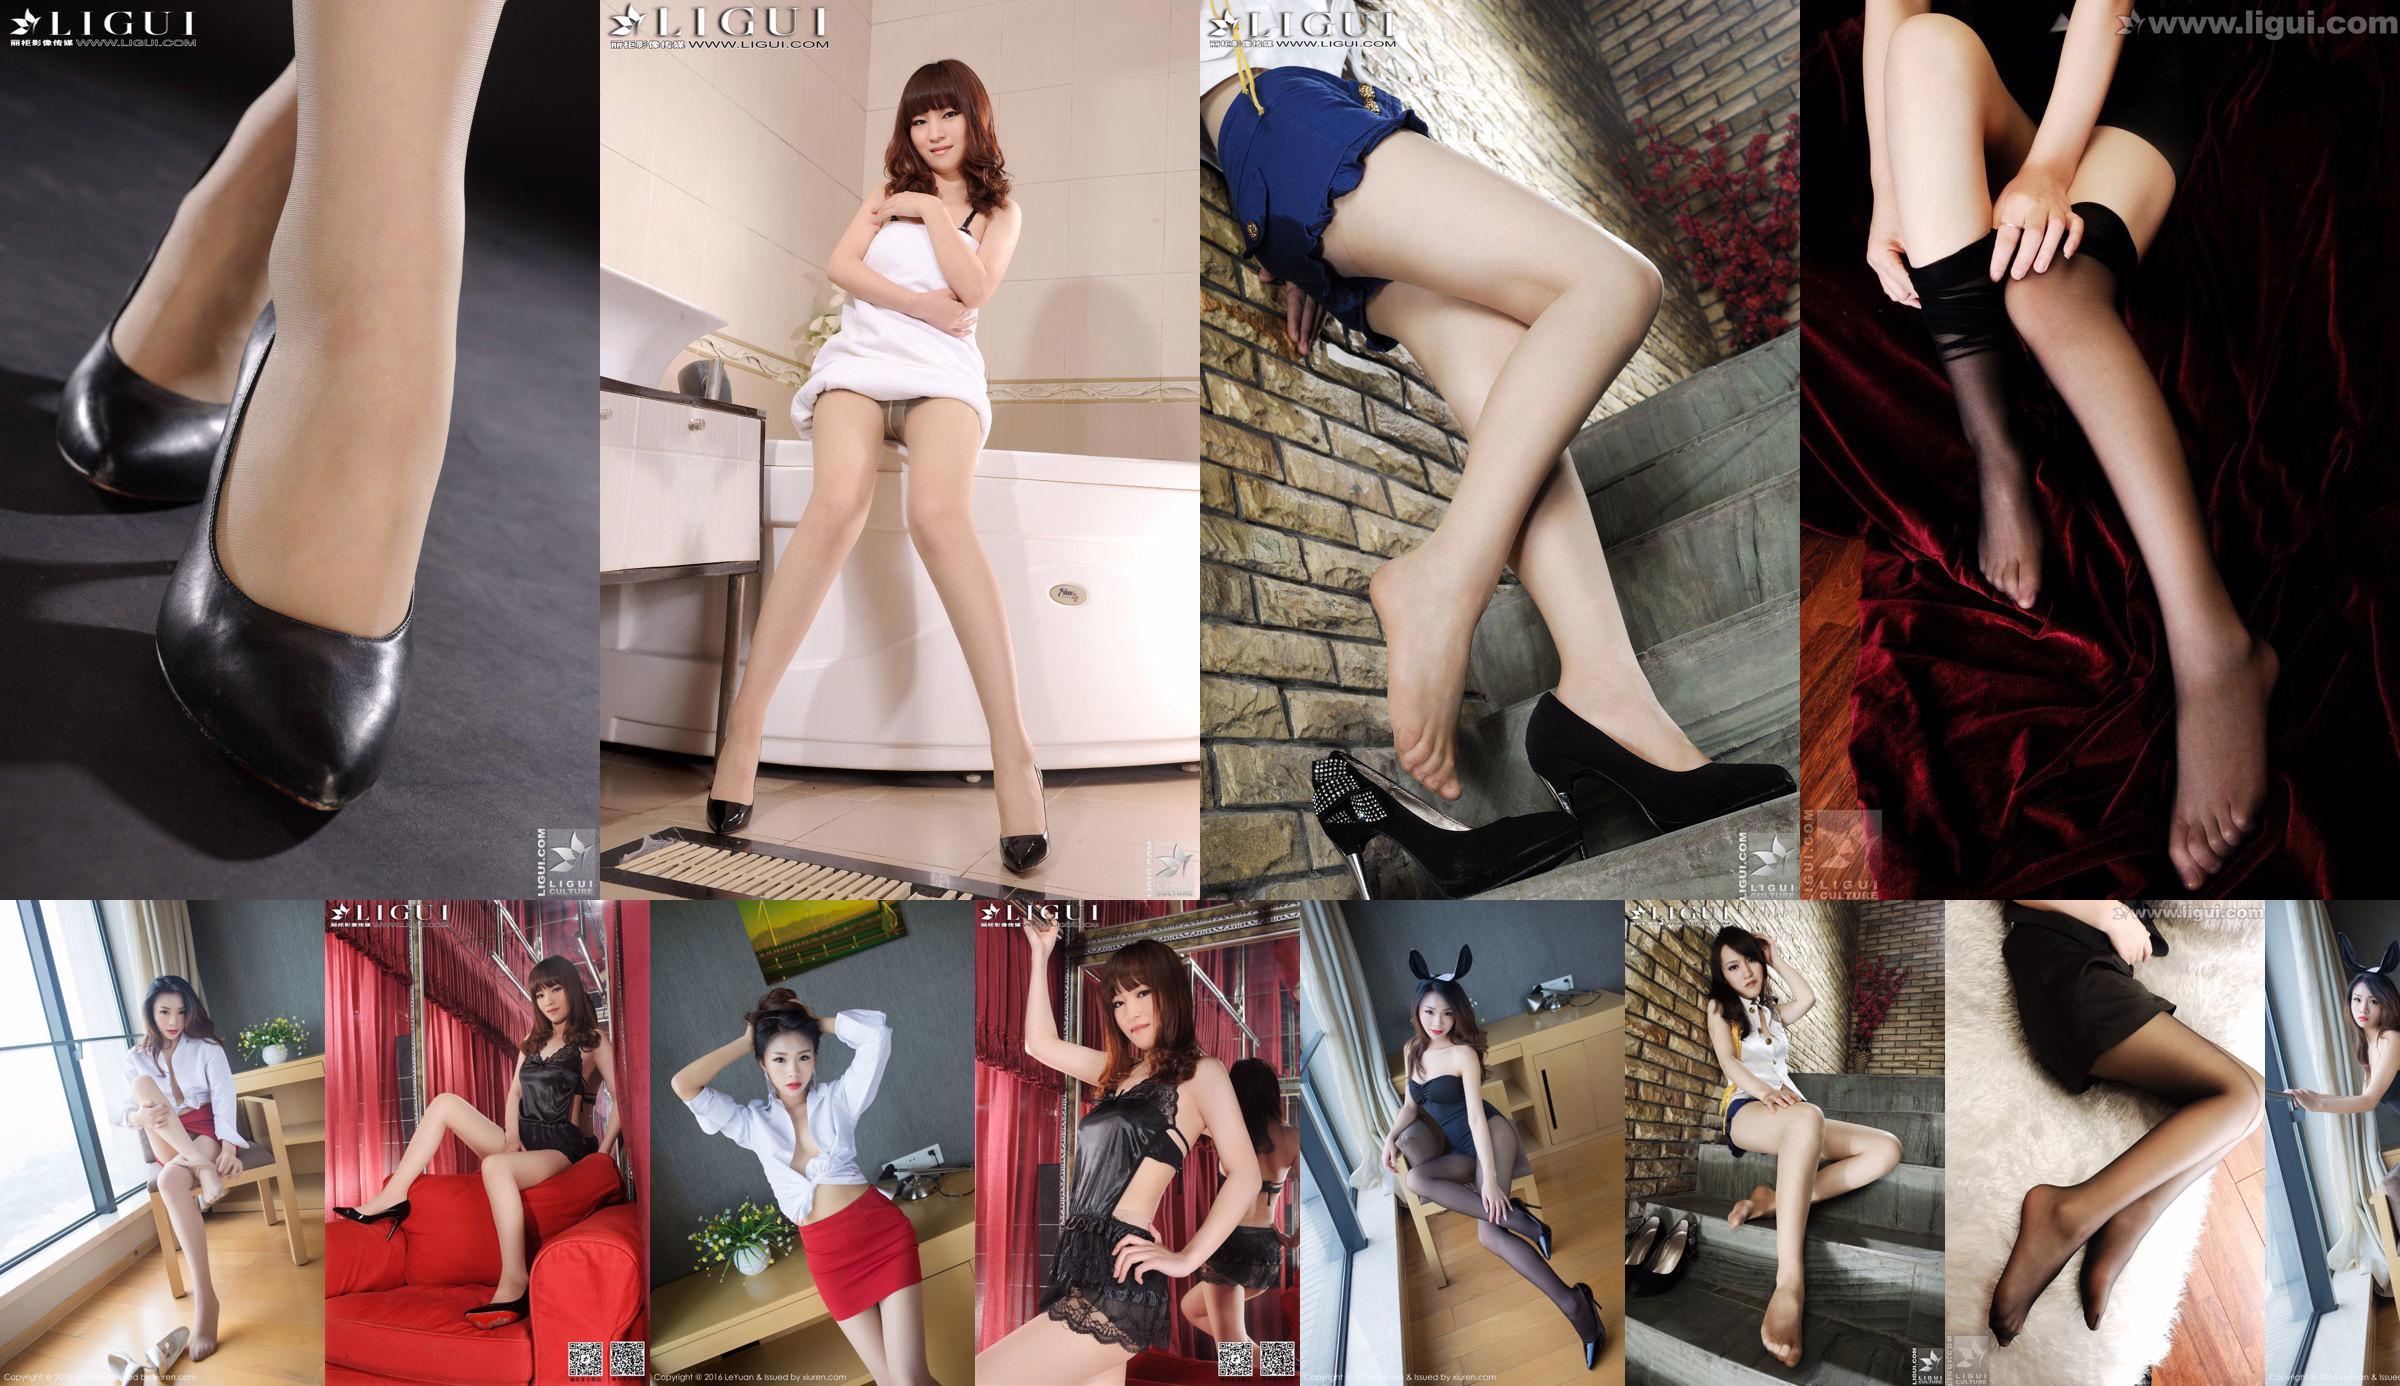 Người mẫu Tina "Chân lụa đen quyến rũ" [丽 柜 LiGui] Chụp ảnh Chân dài ngọc nữ No.0e72e4 Trang 1